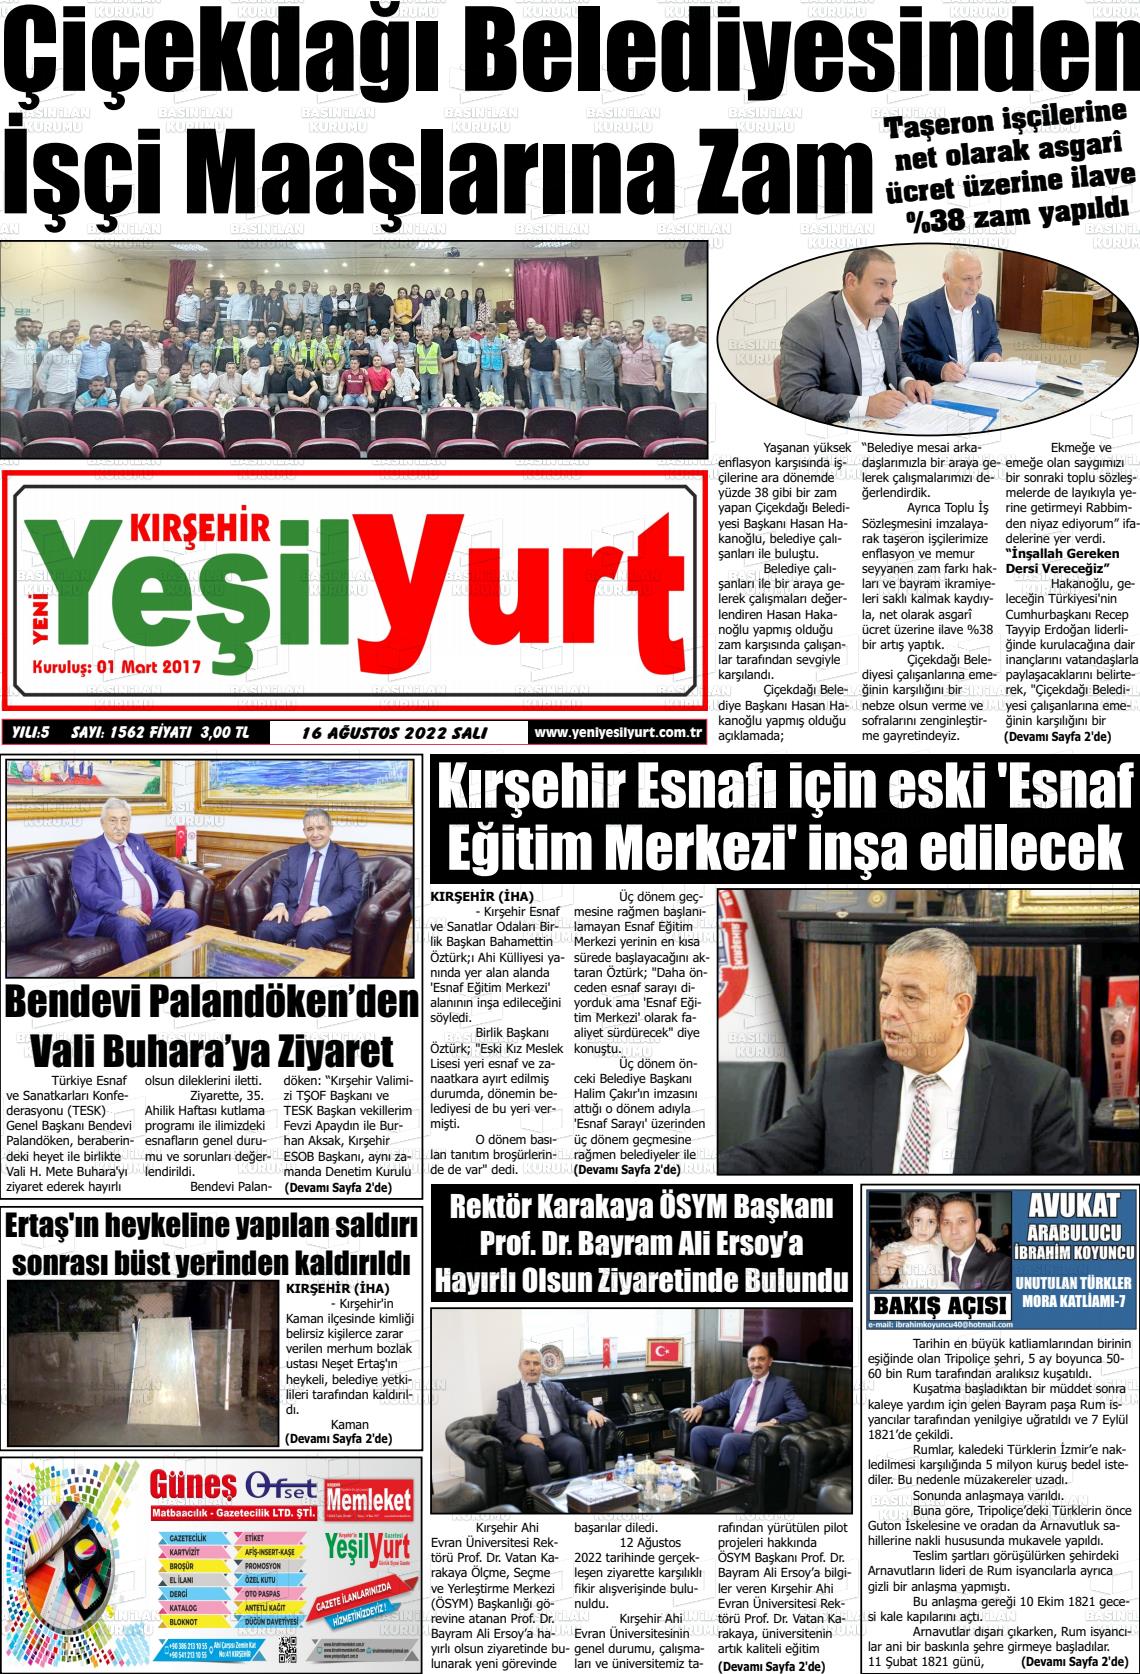 16 Ağustos 2022 Yeni Yeşilyurt Gazete Manşeti